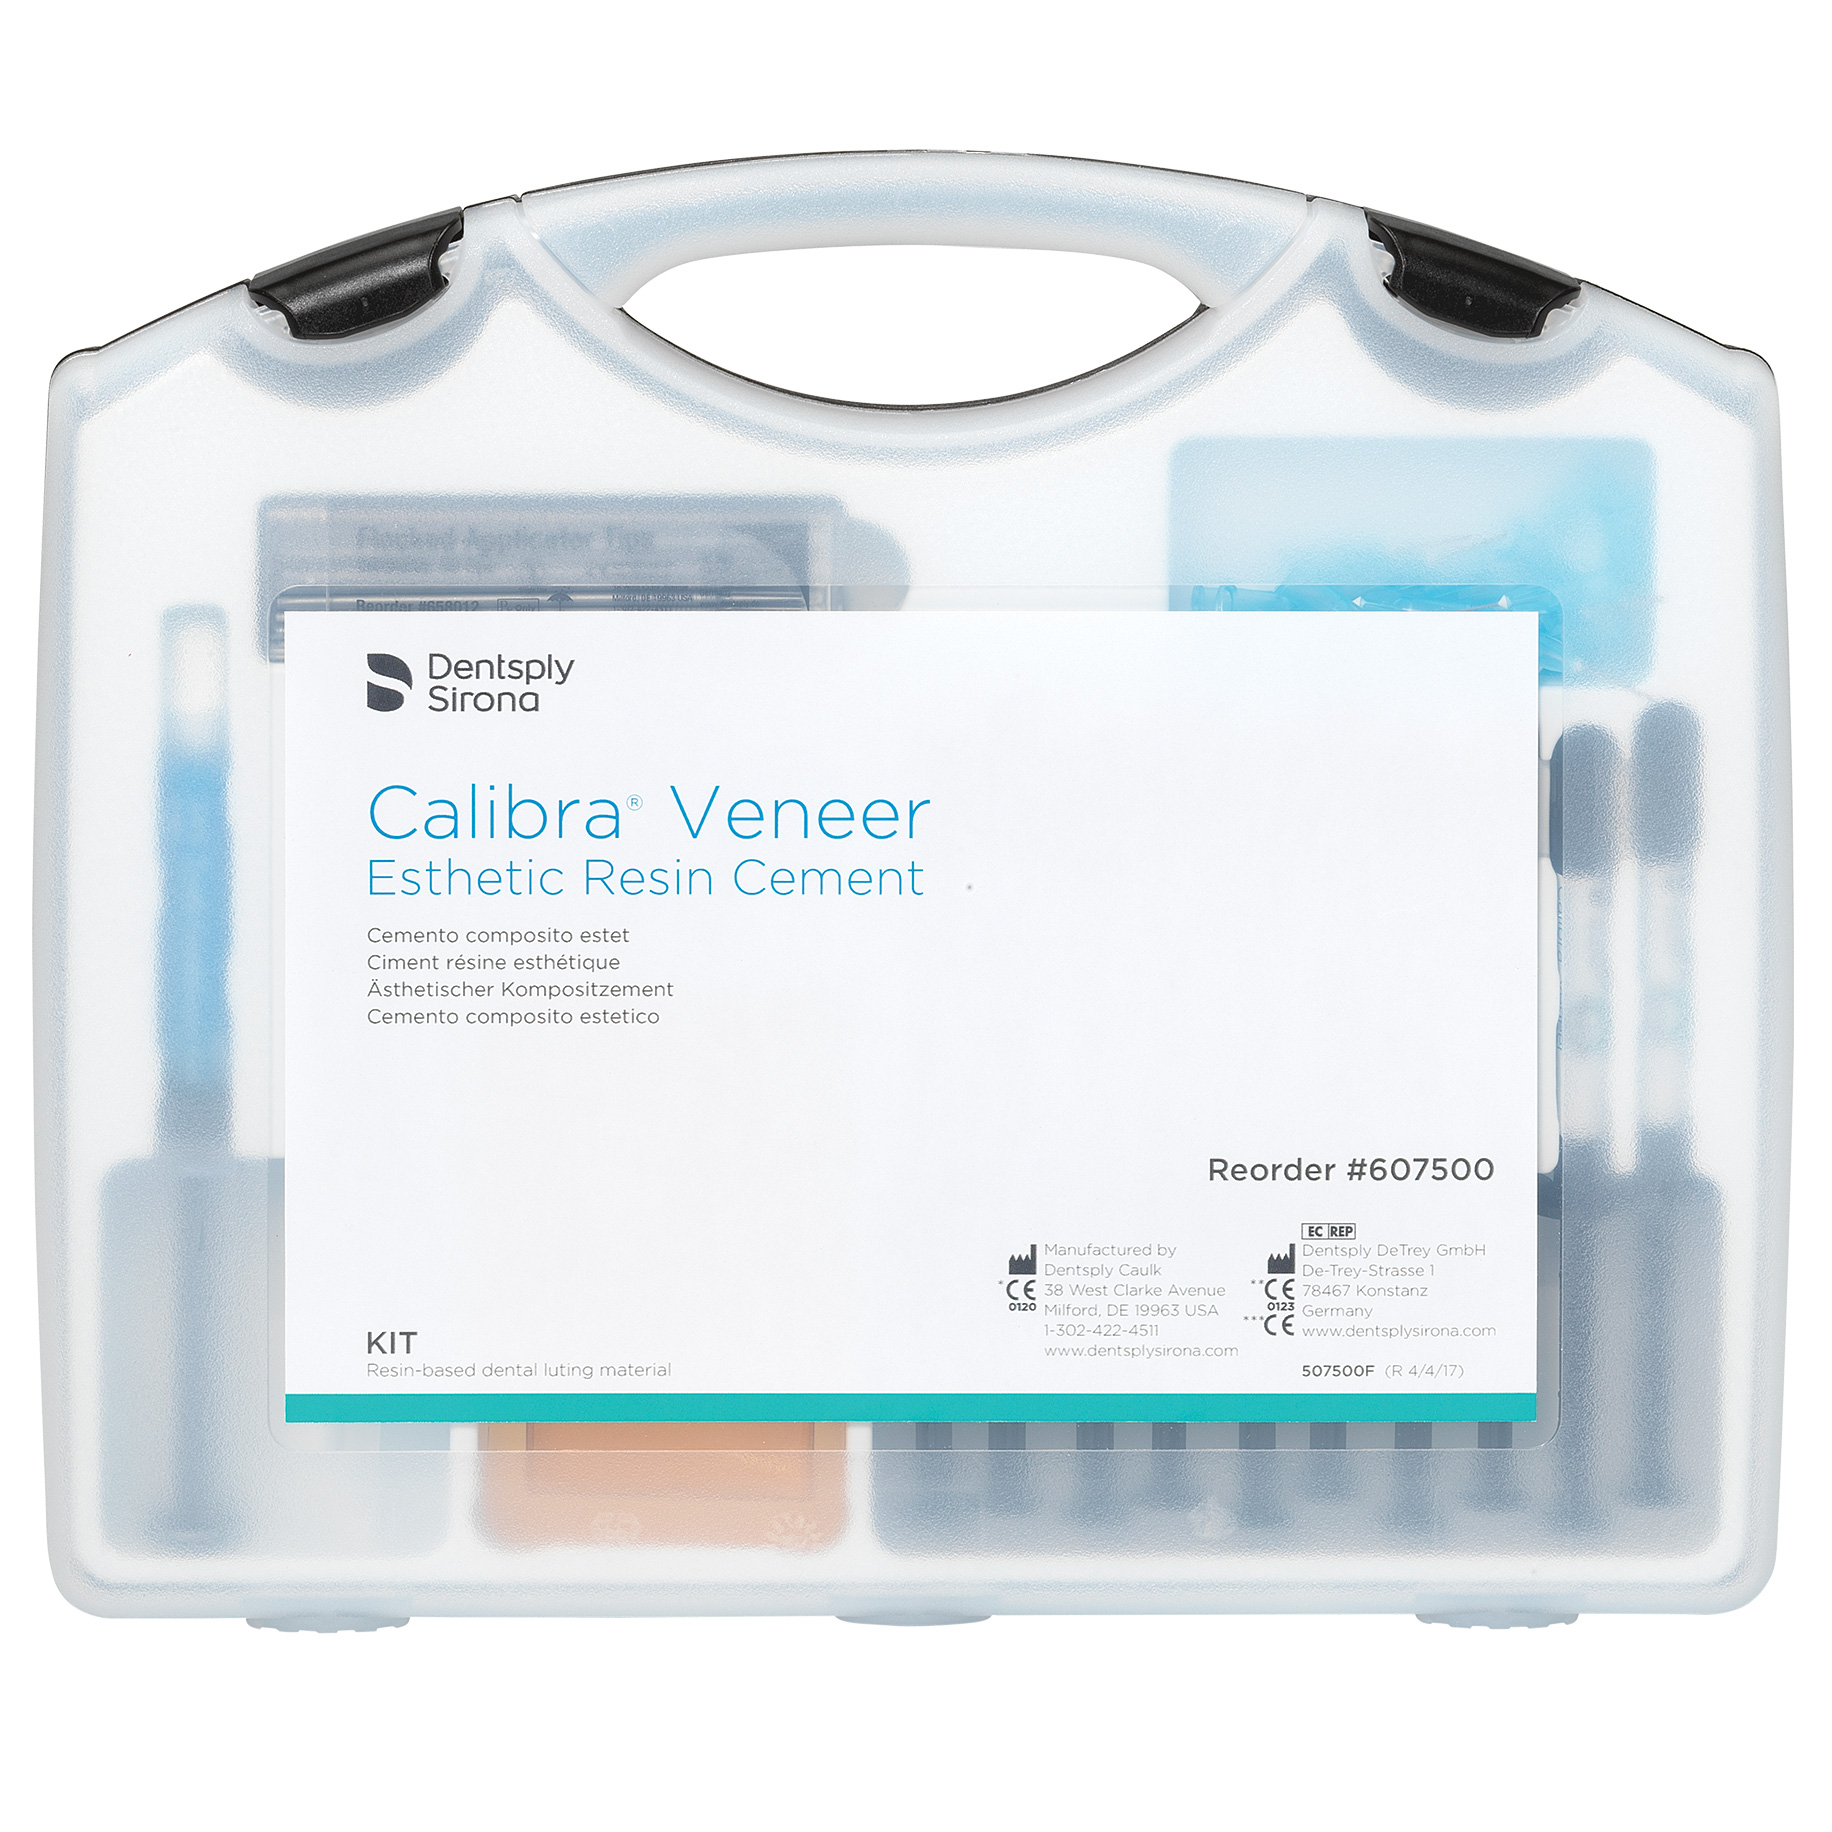 FWD060 : Calibra Veneer Kit